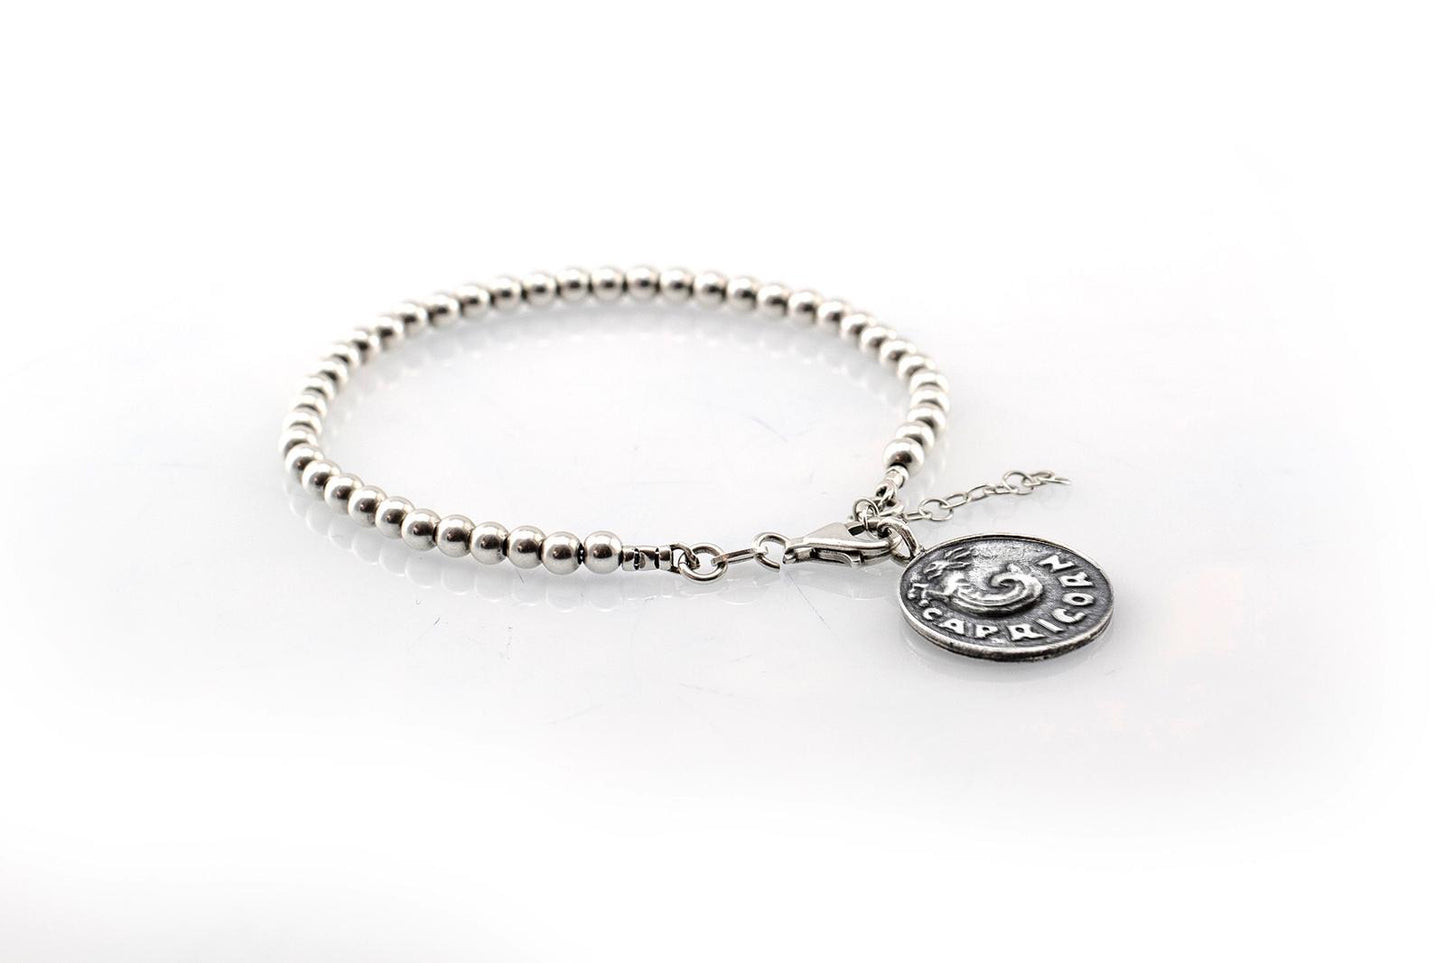 Capricorn medallion with a Bead Bracelet -Zodiac jewelry -One of kind jewelry